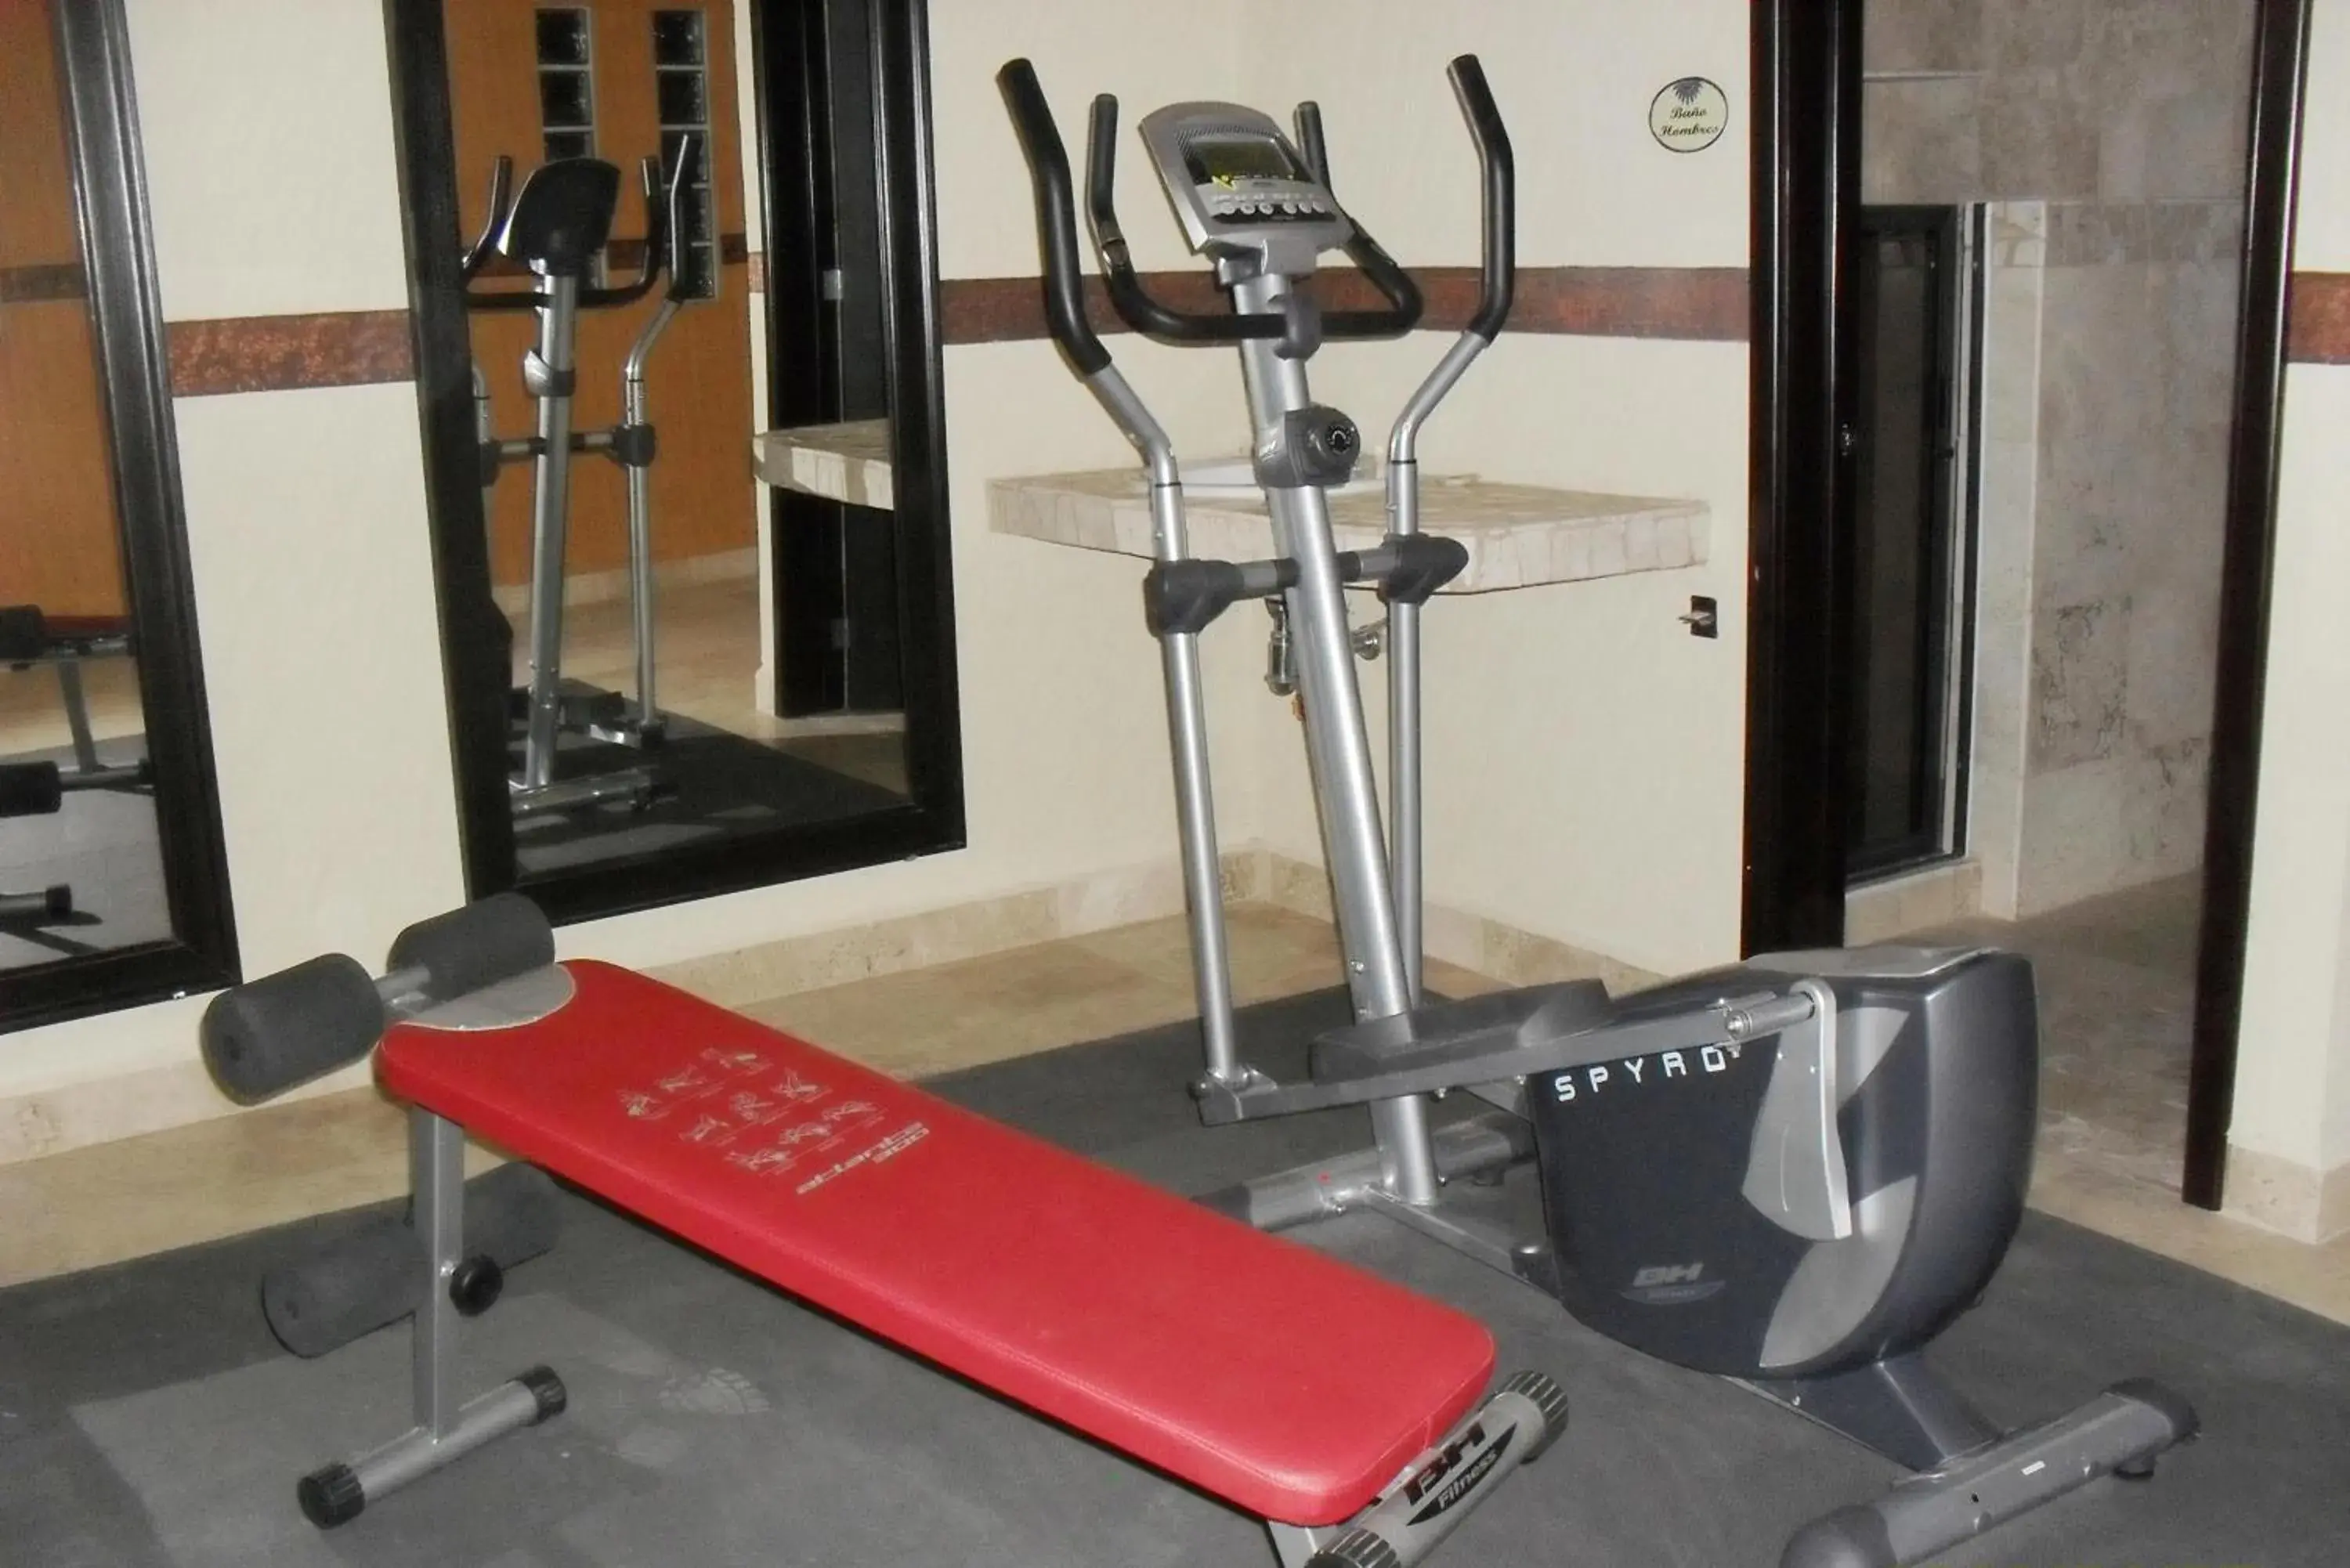 Fitness centre/facilities, Fitness Center/Facilities in Villas y Suites Paraiso del Sur